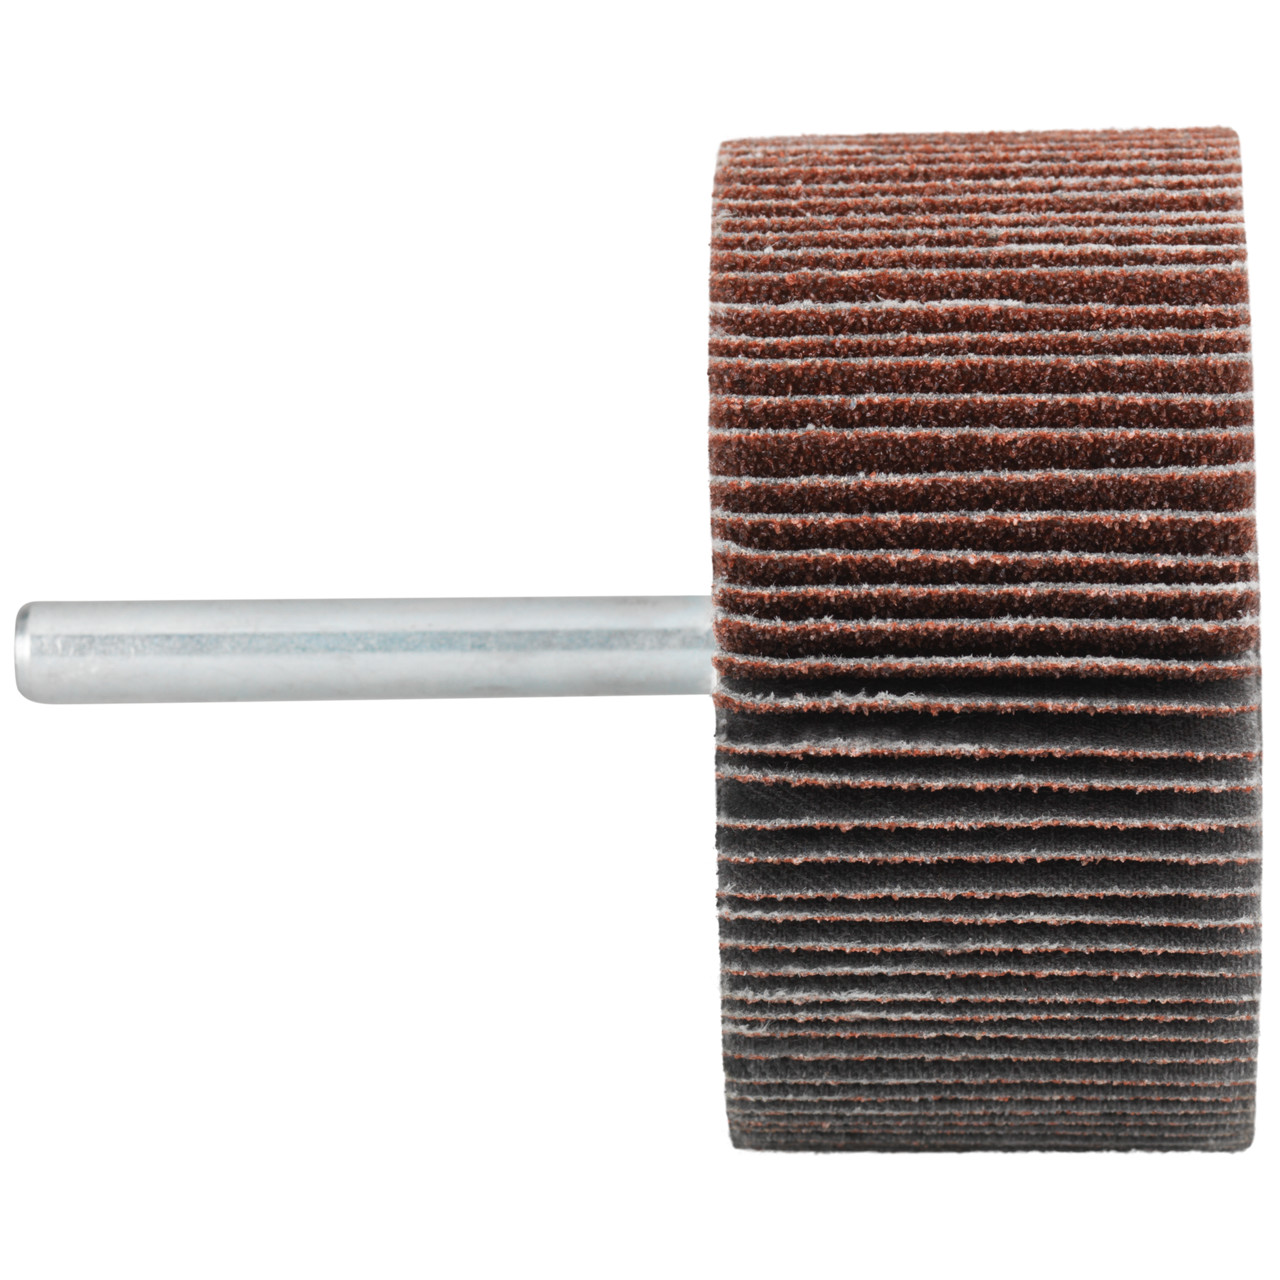 Tyrolit A-P01 C X Pennen DxD 40x15 Voor staal, roestvast staal en non-ferrometalen, P120, vorm: 52LA, Art. 816909